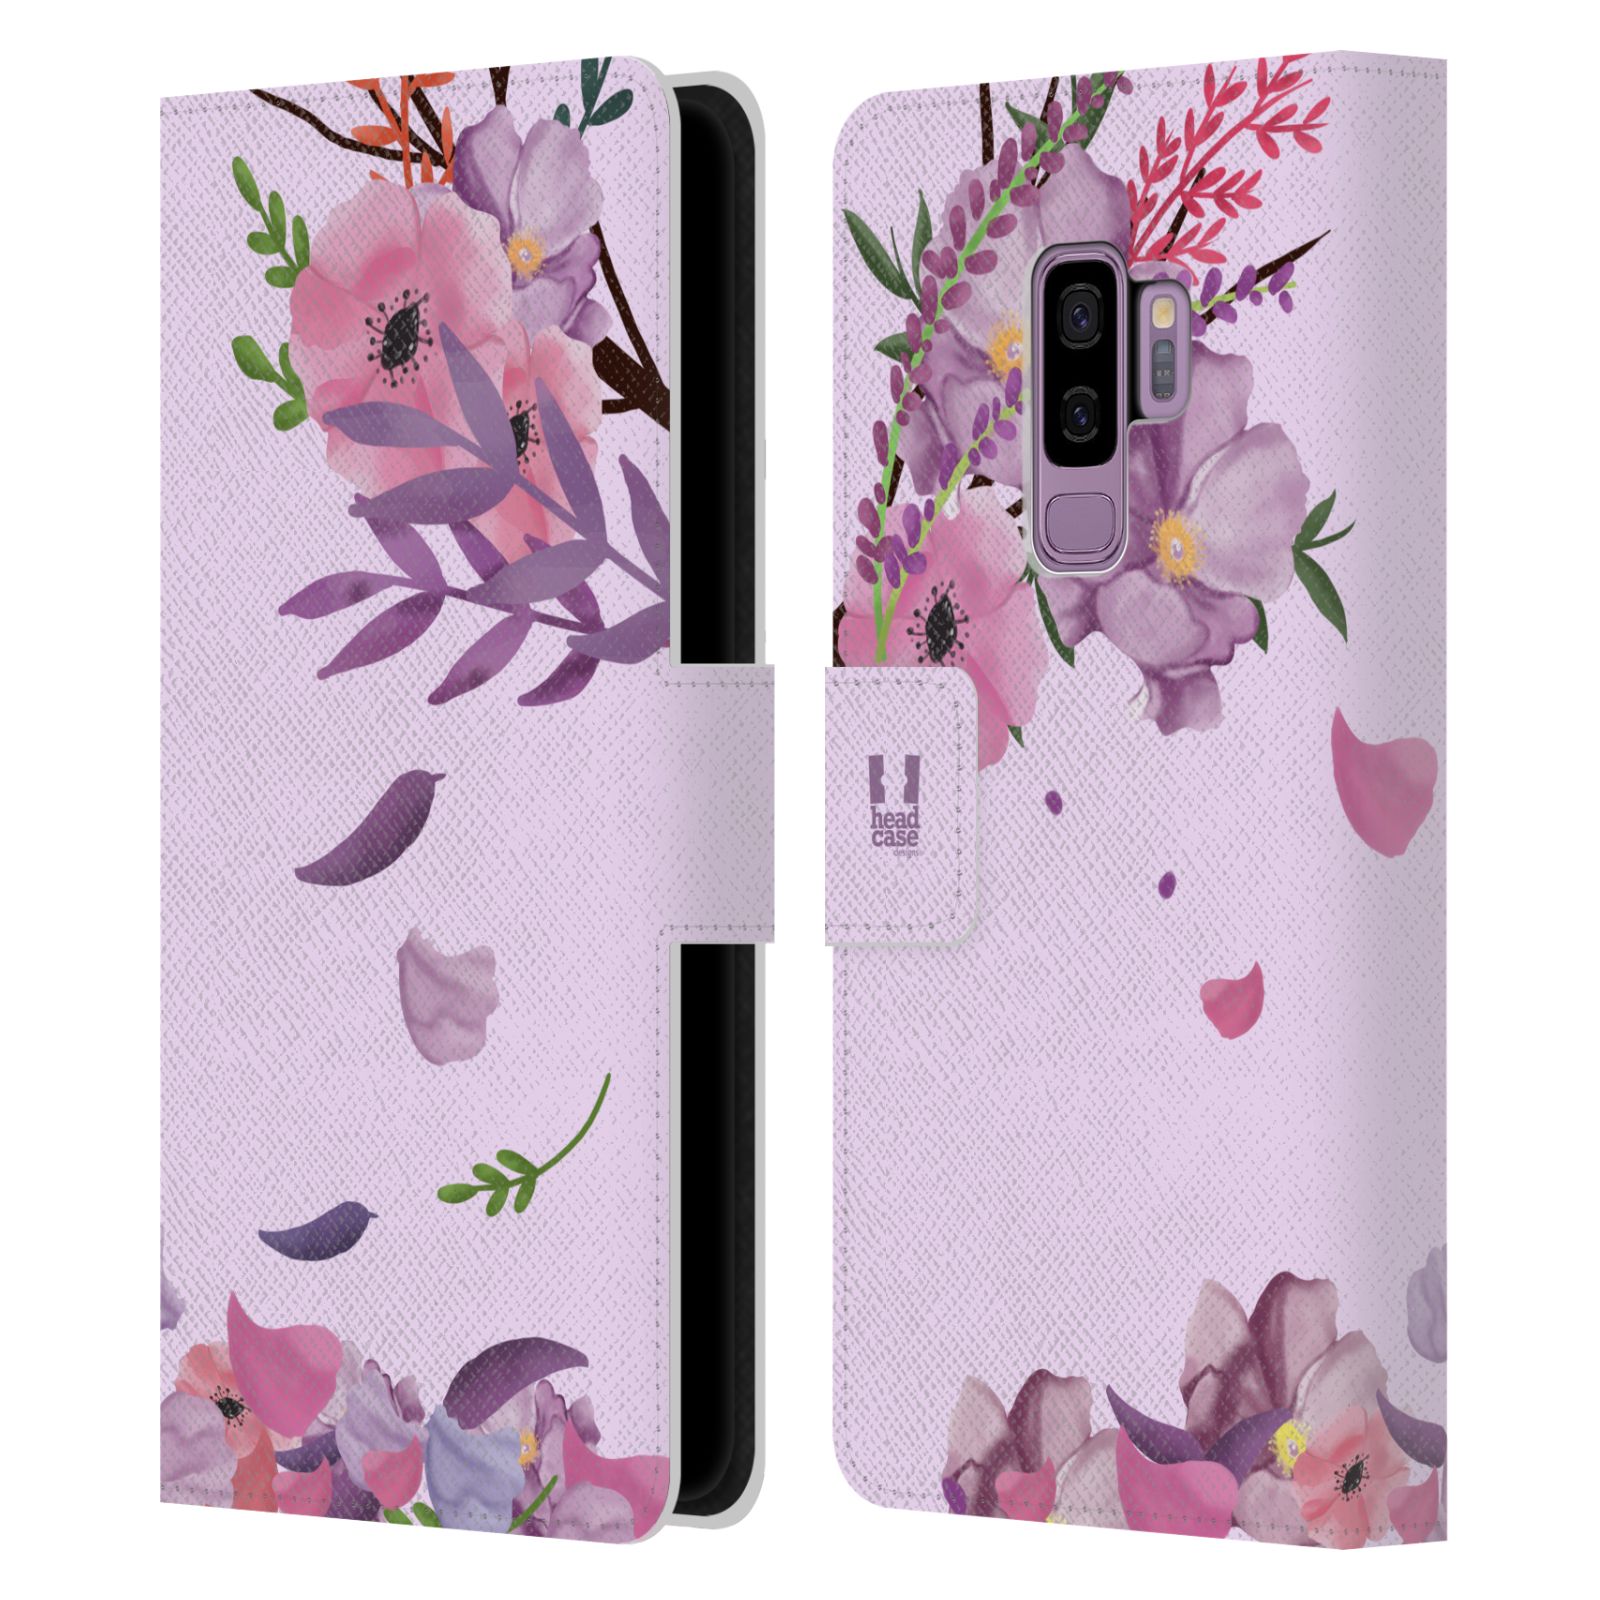 Pouzdro na mobil Samsung Galaxy S9+ / S9 PLUS - HEAD CASE - Rozkvetlé růže a listy růžová